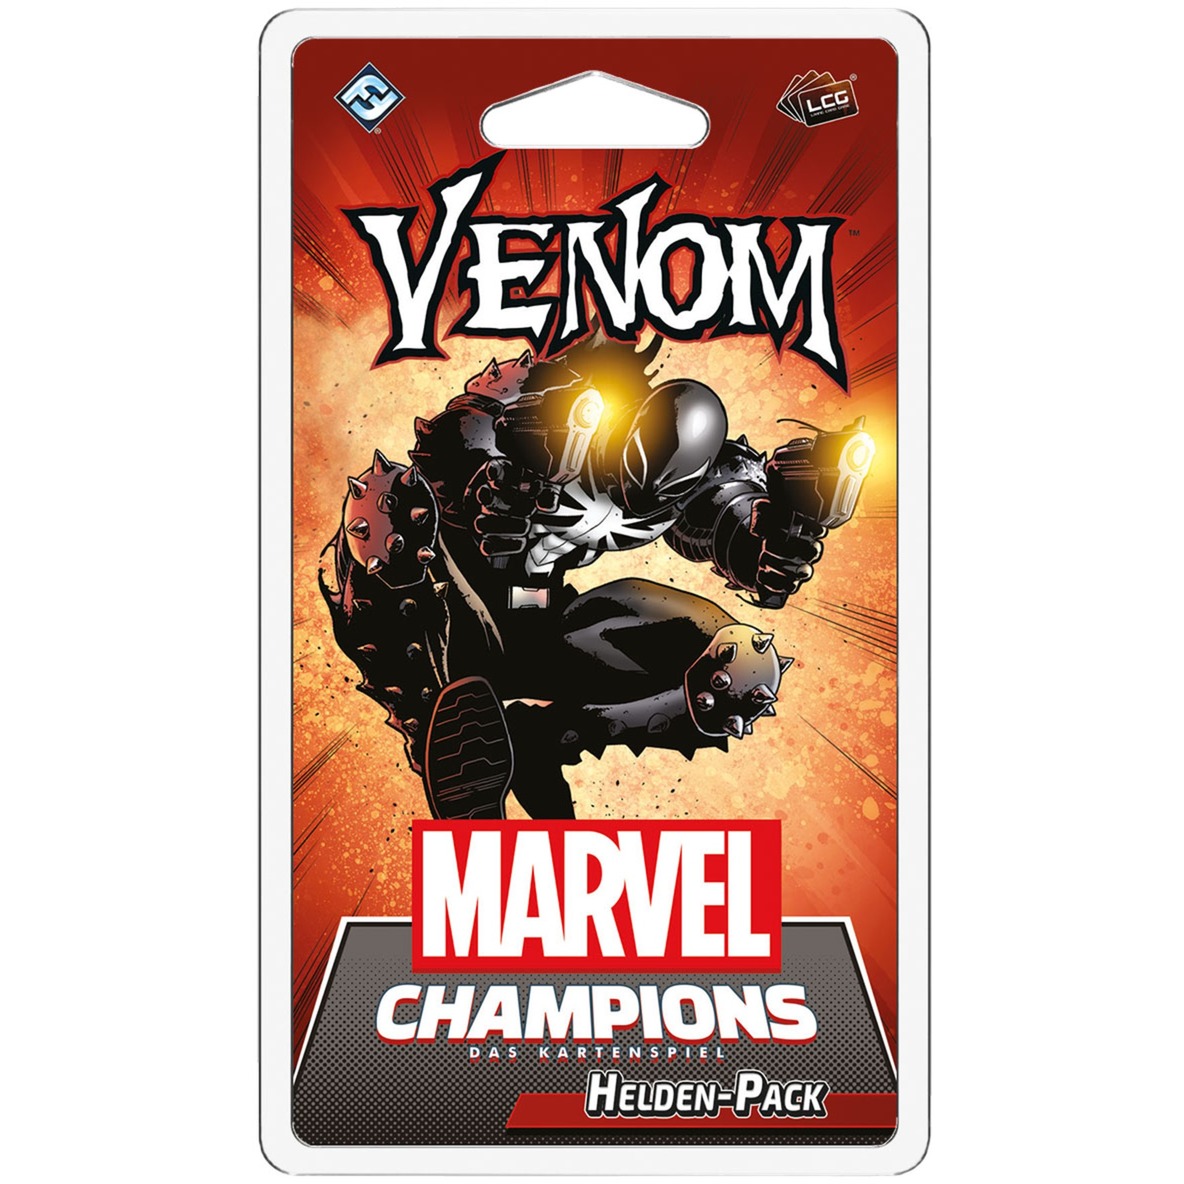 Image of Alternate - Marvel Champions: Das Kartenspiel - Venom online einkaufen bei Alternate